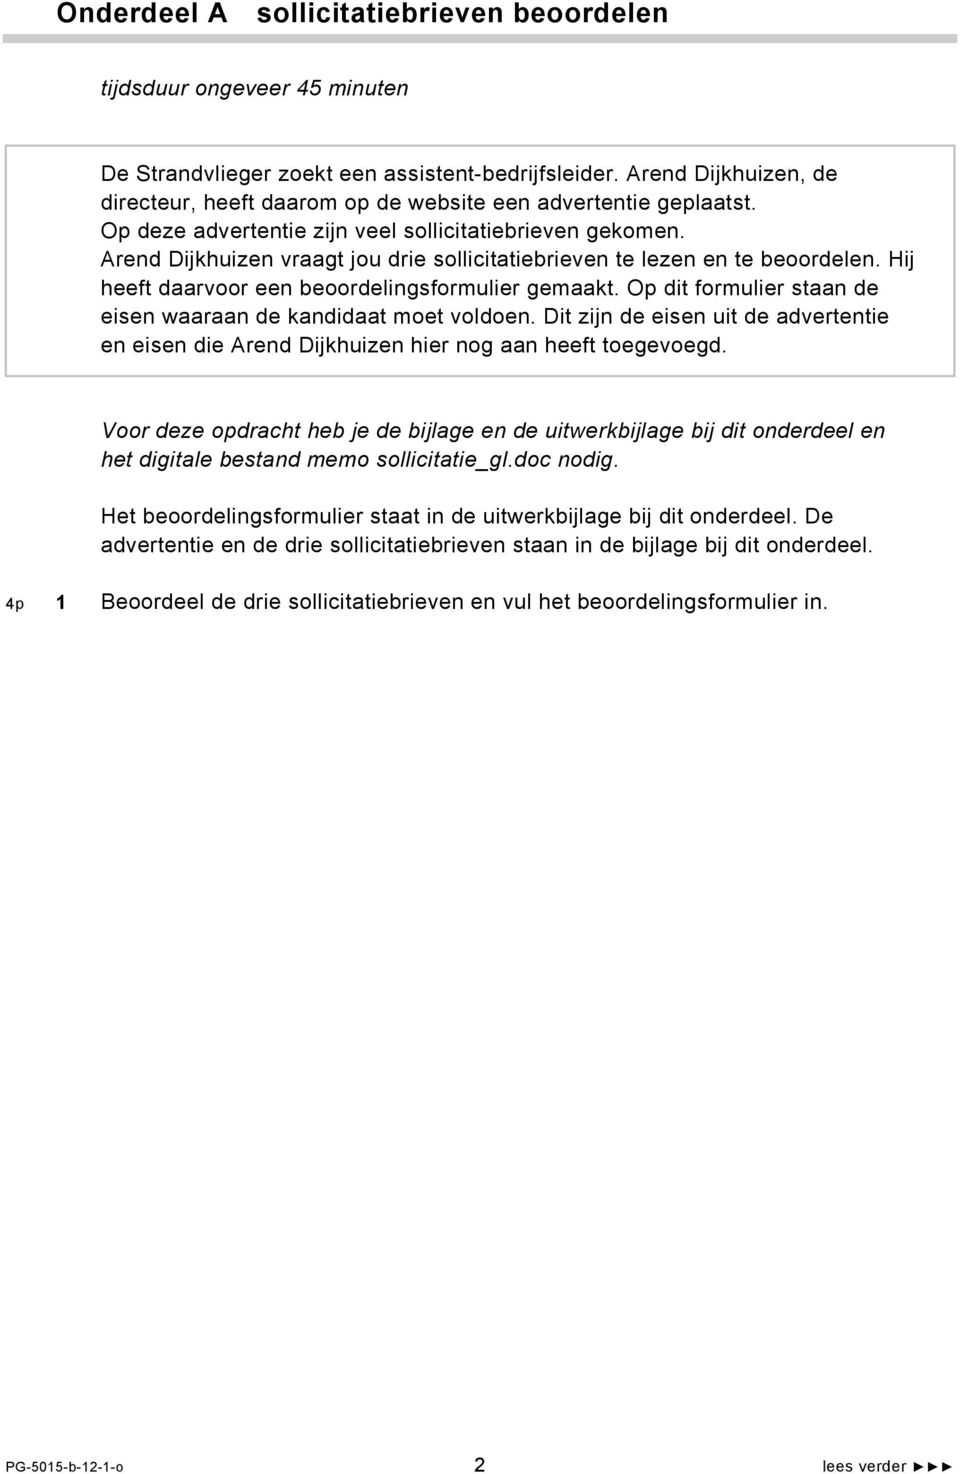 Arend Dijkhuizen vraagt jou drie sollicitatiebrieven te lezen en te beoordelen. Hij heeft daarvoor een beoordelingsformulier gemaakt. Op dit formulier staan de eisen waaraan de kandidaat moet voldoen.